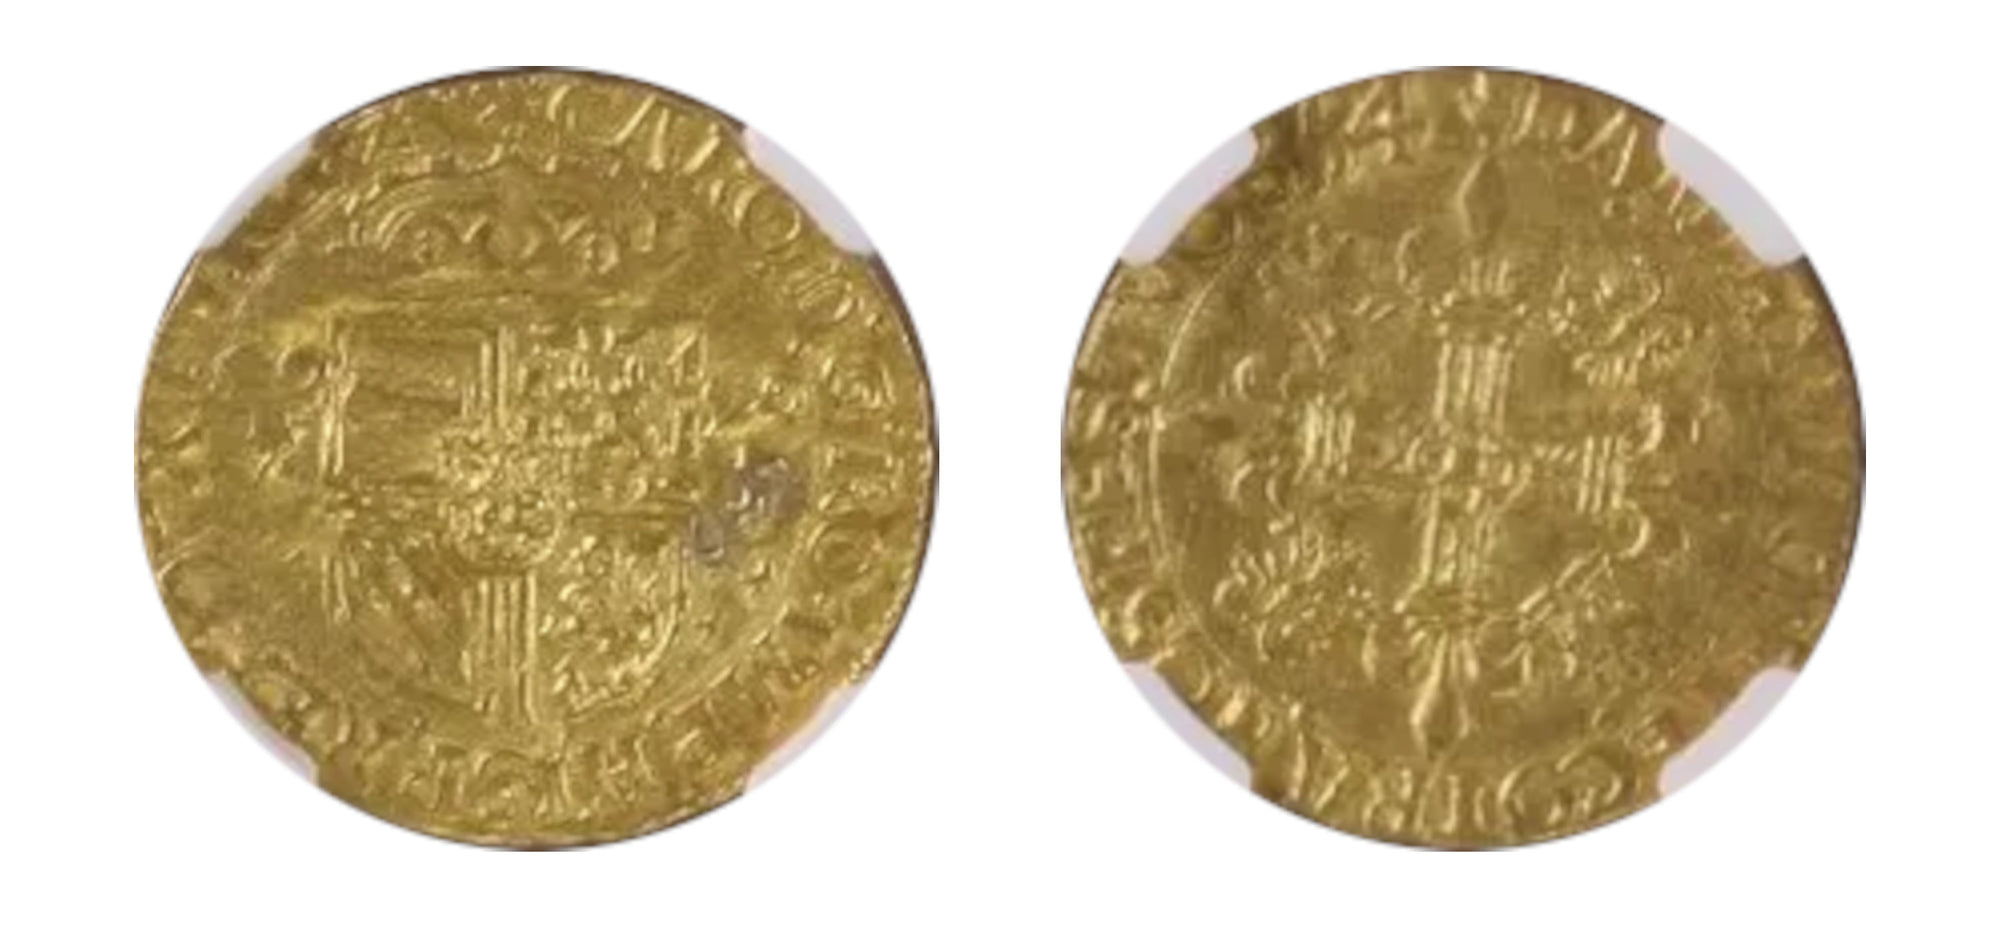 1554 Belgium Gold CD'OR NGC MS 61 - Hard Asset Management, Inc